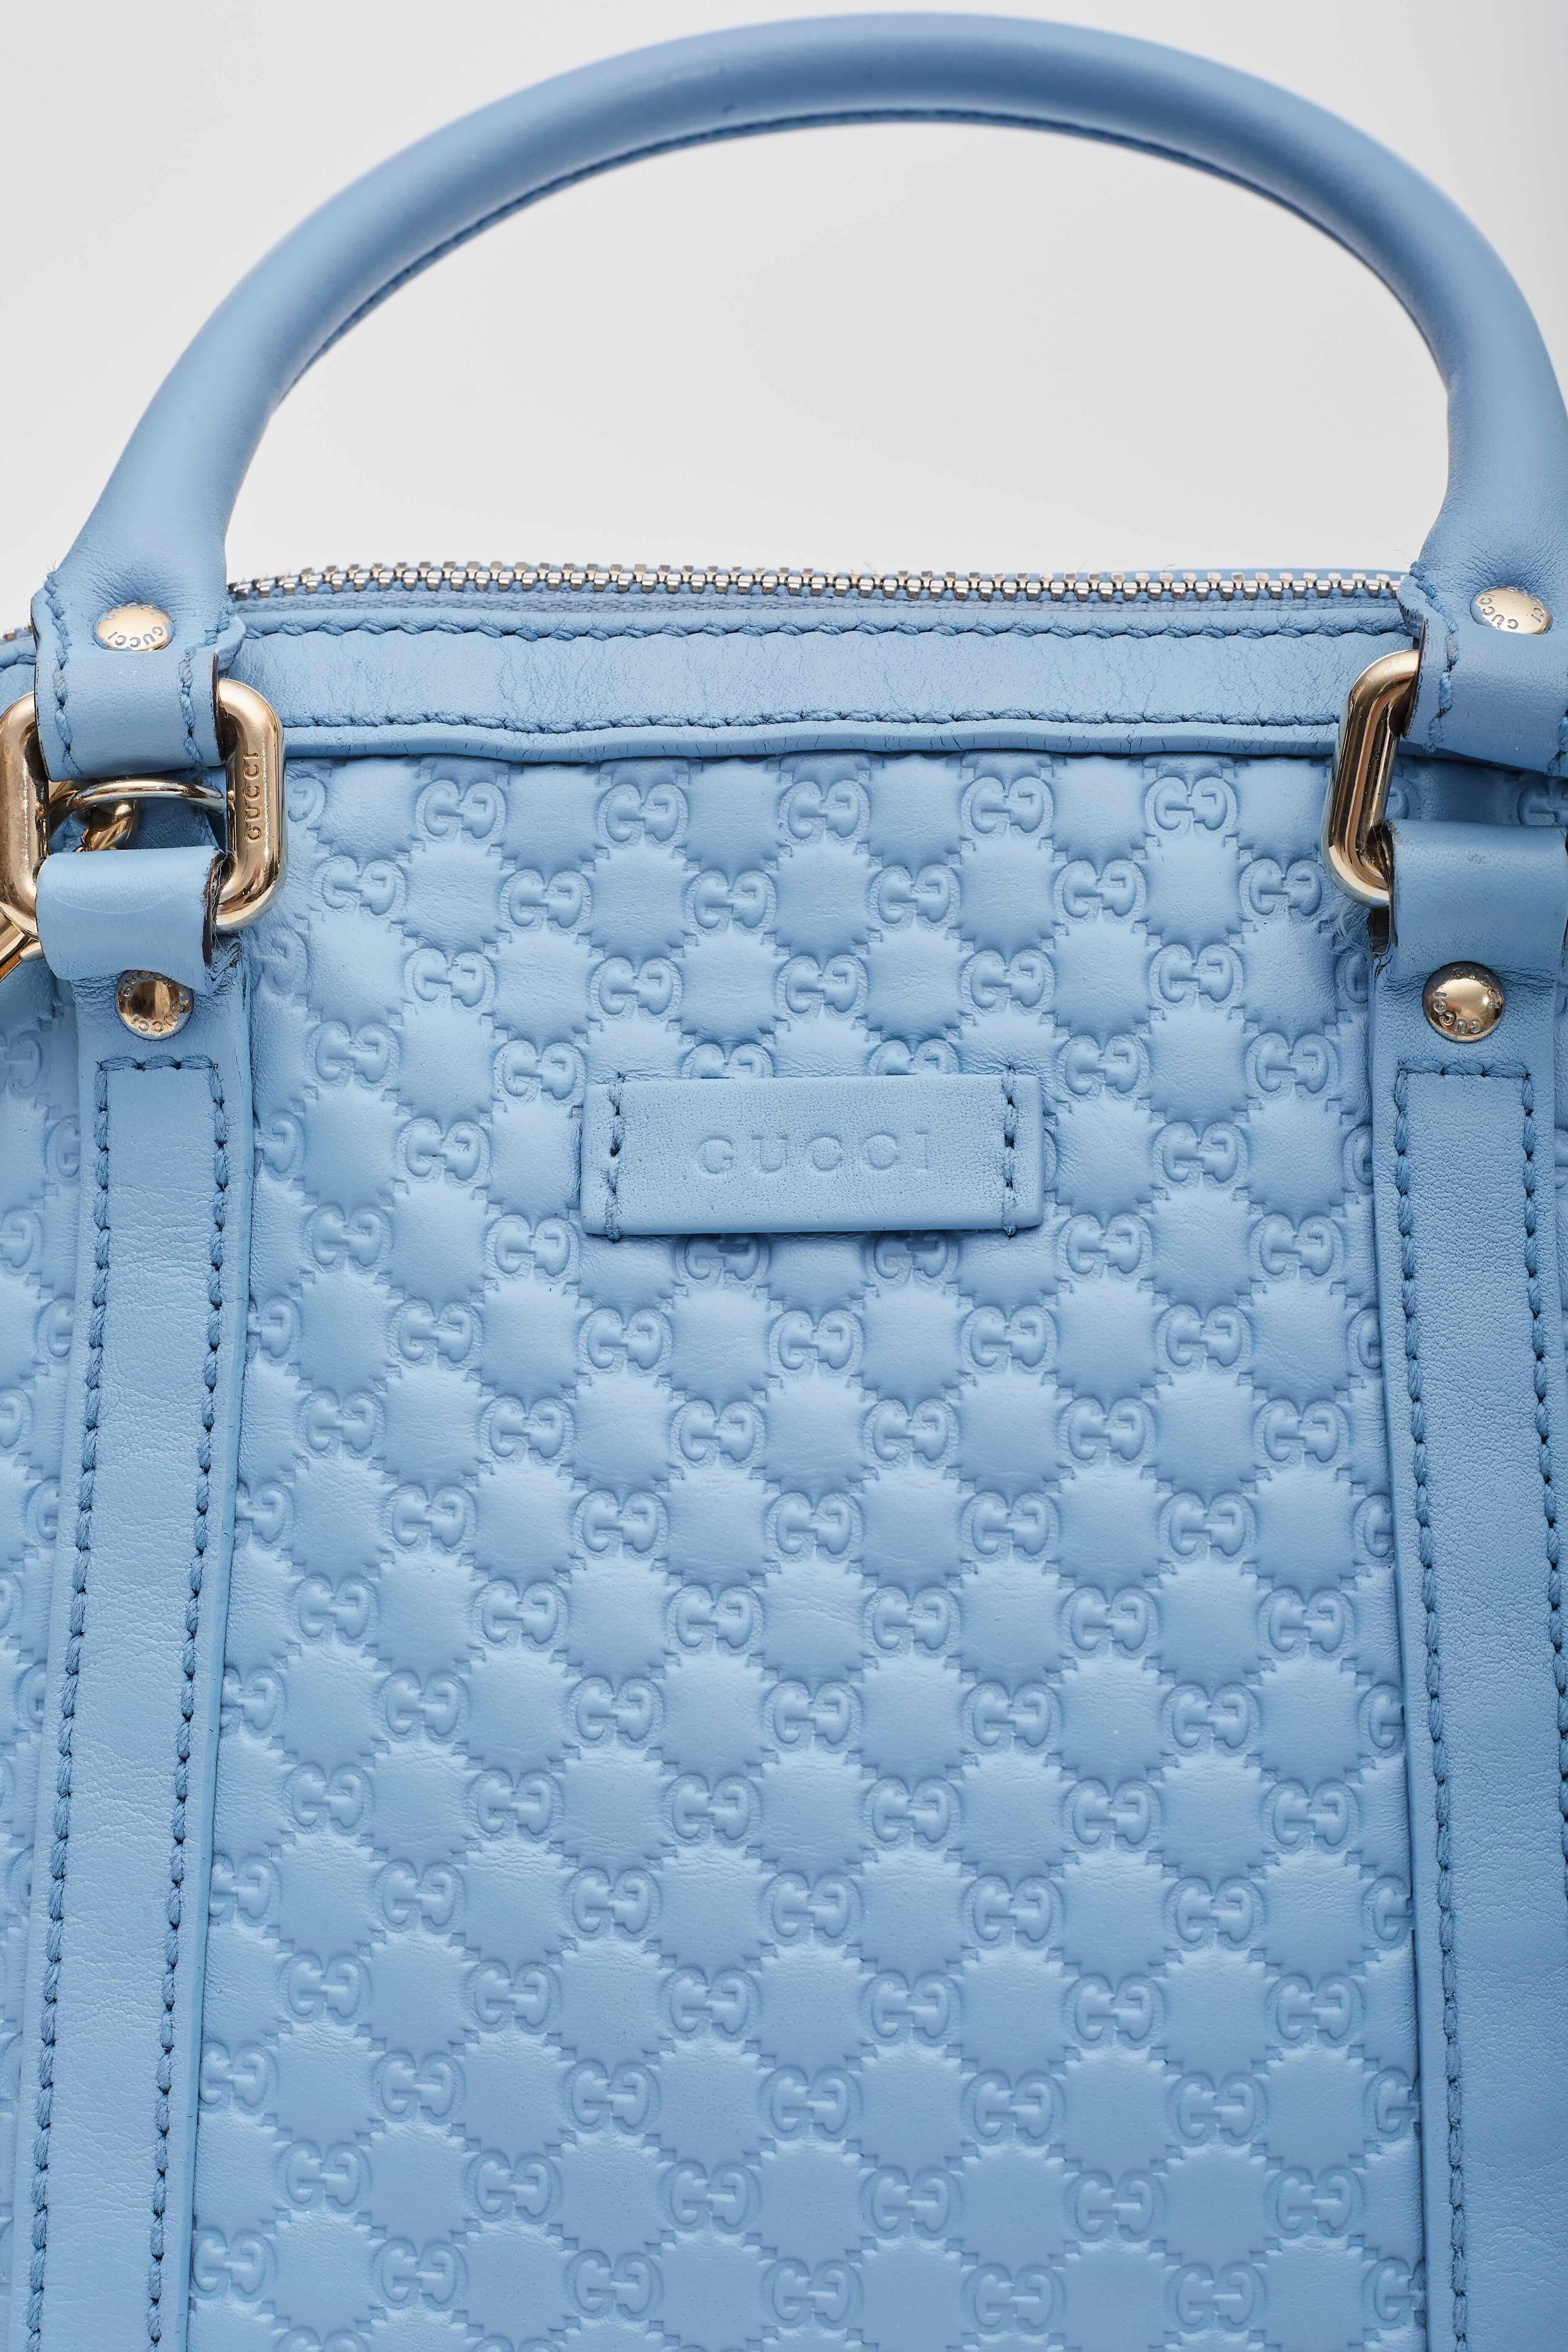 Gucci Baby Blue Microissima Mini Dome Bag For Sale 3